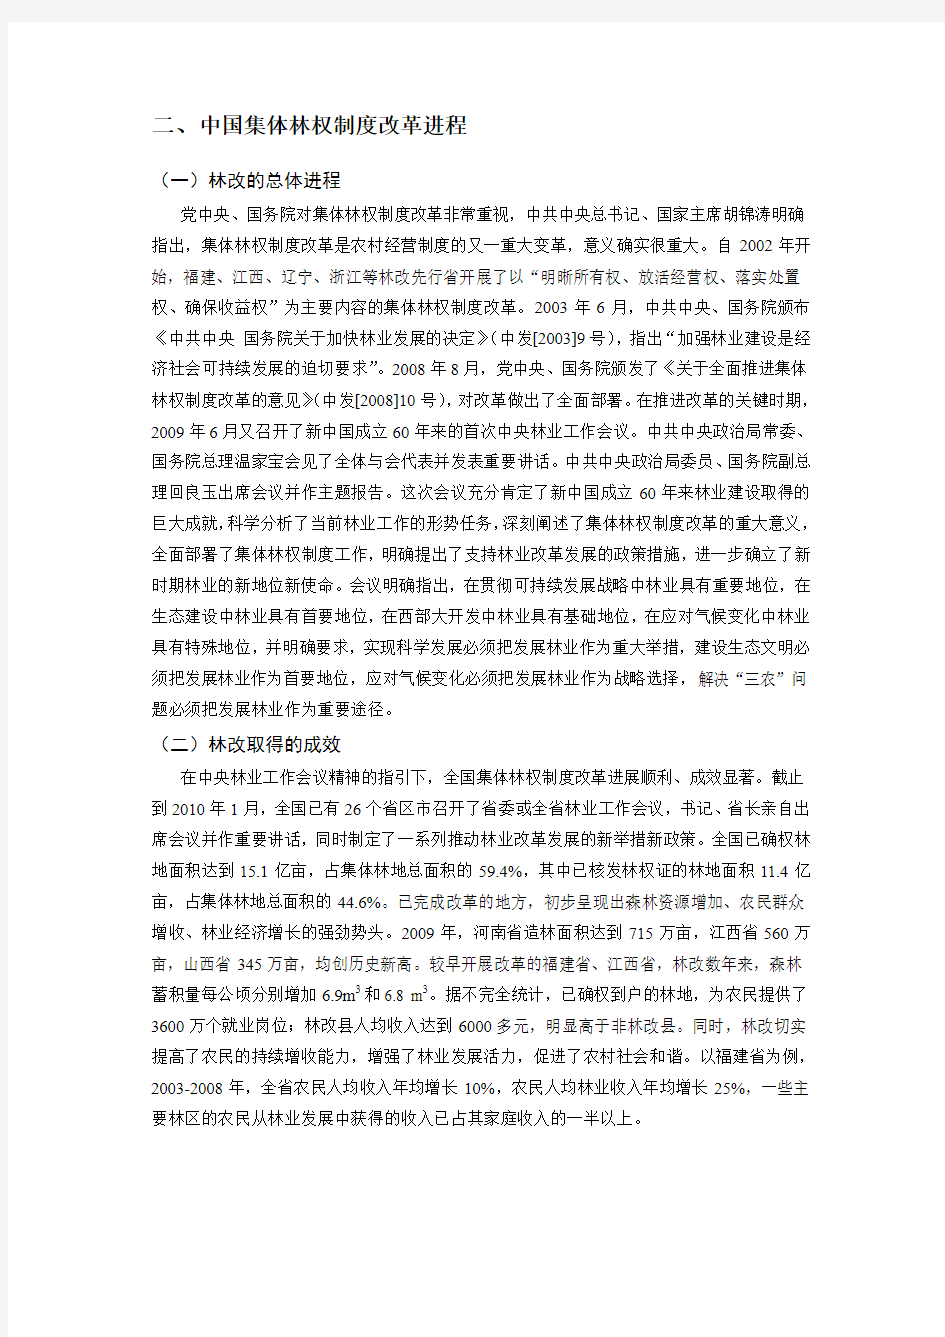 修改稿,10-24北京市深化集体林权制度改革调研报告